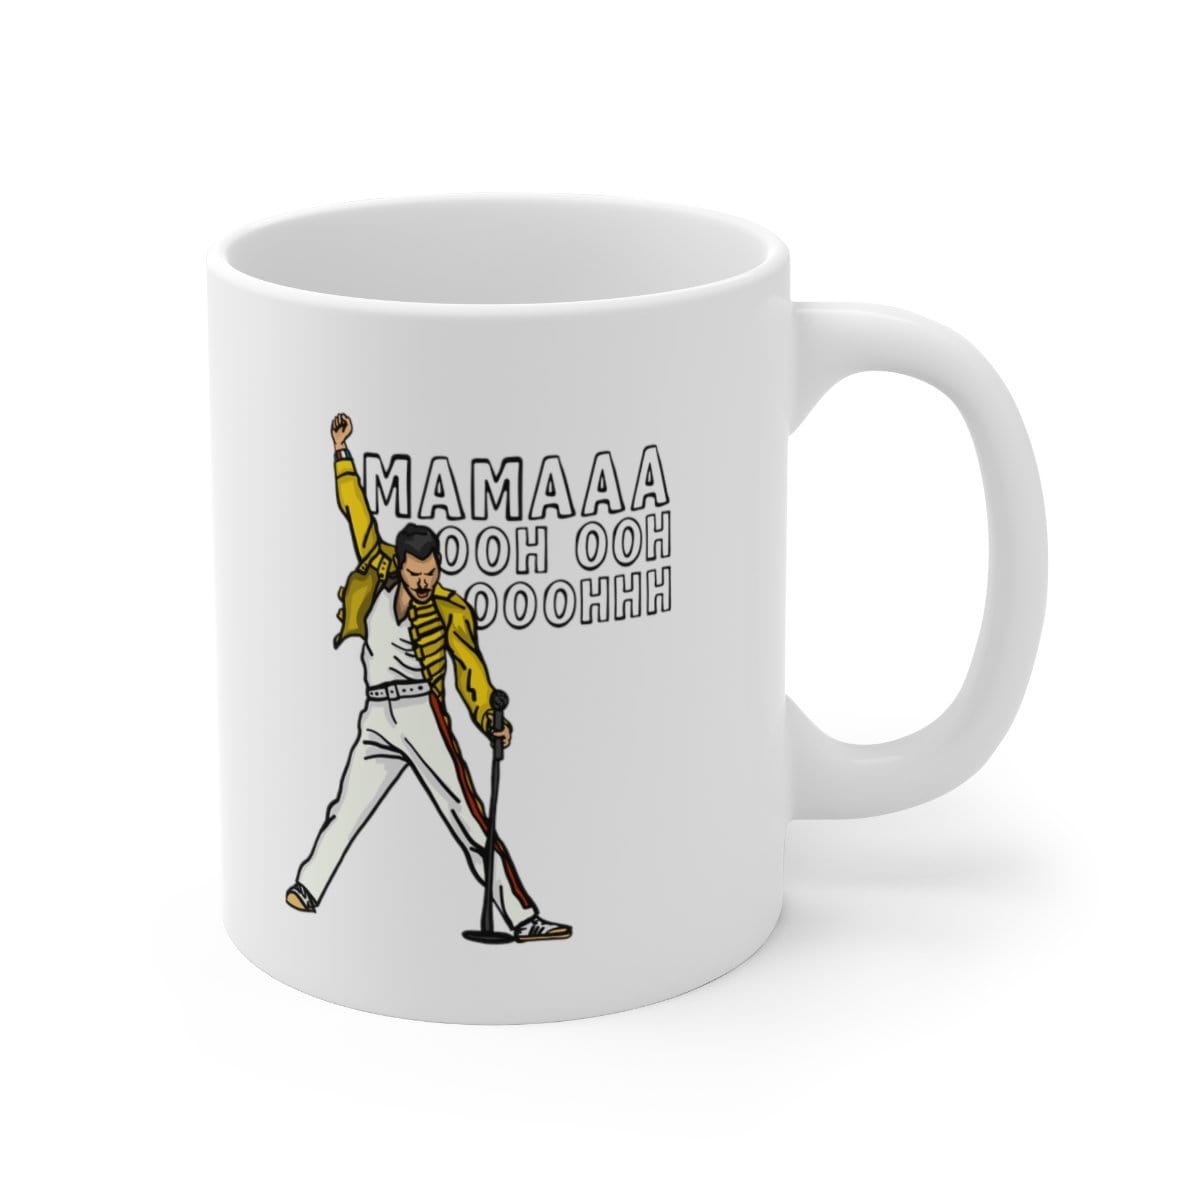 Mummaaaaa 🎙️ - Coffee Mug